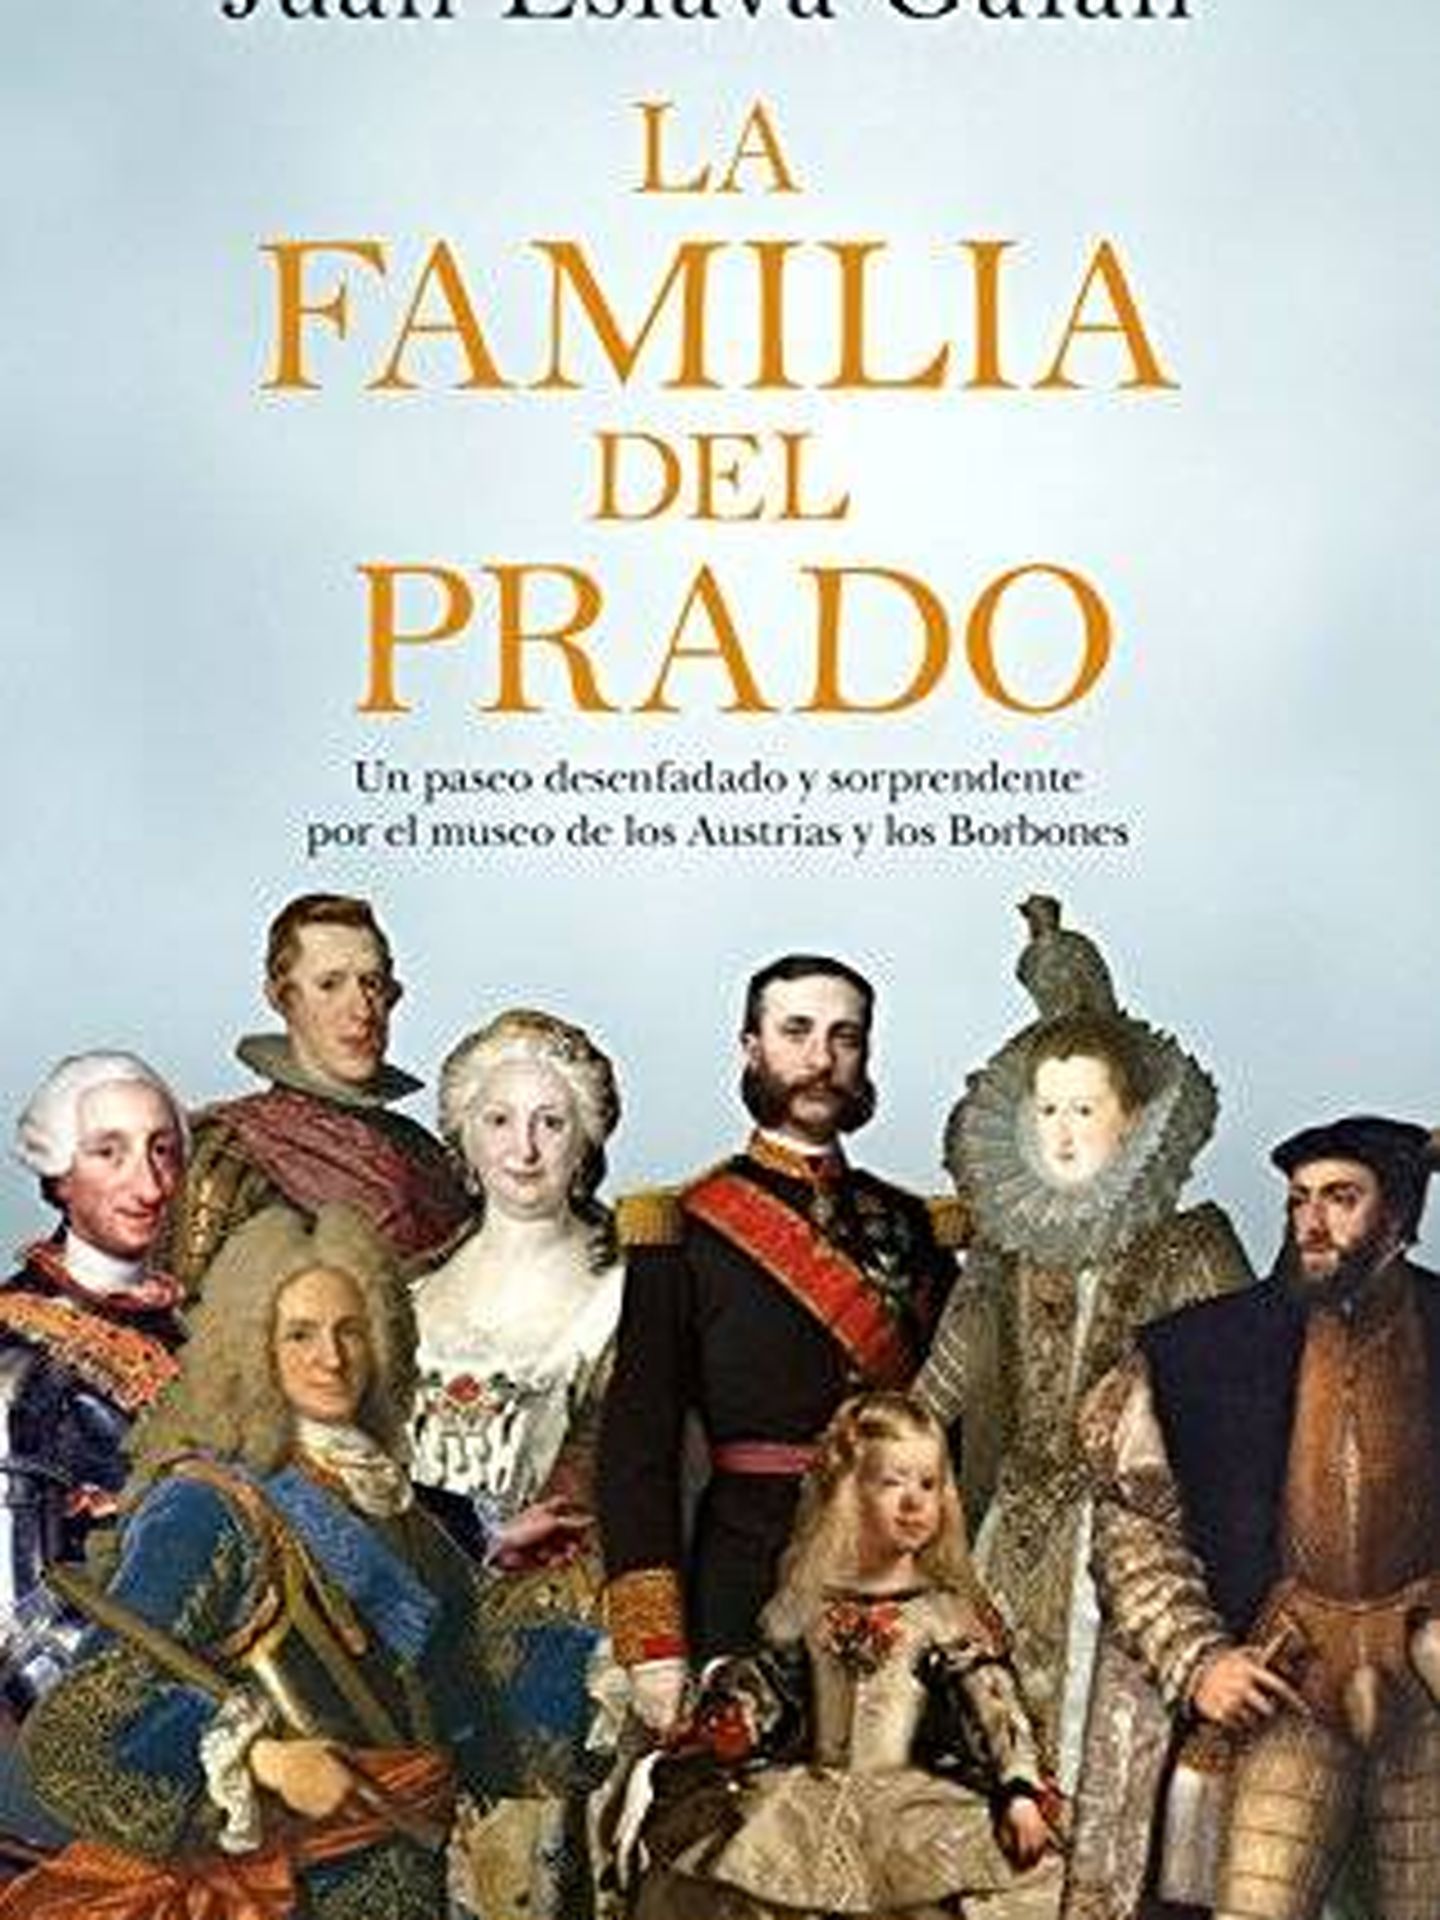 'La familia del Prado'.